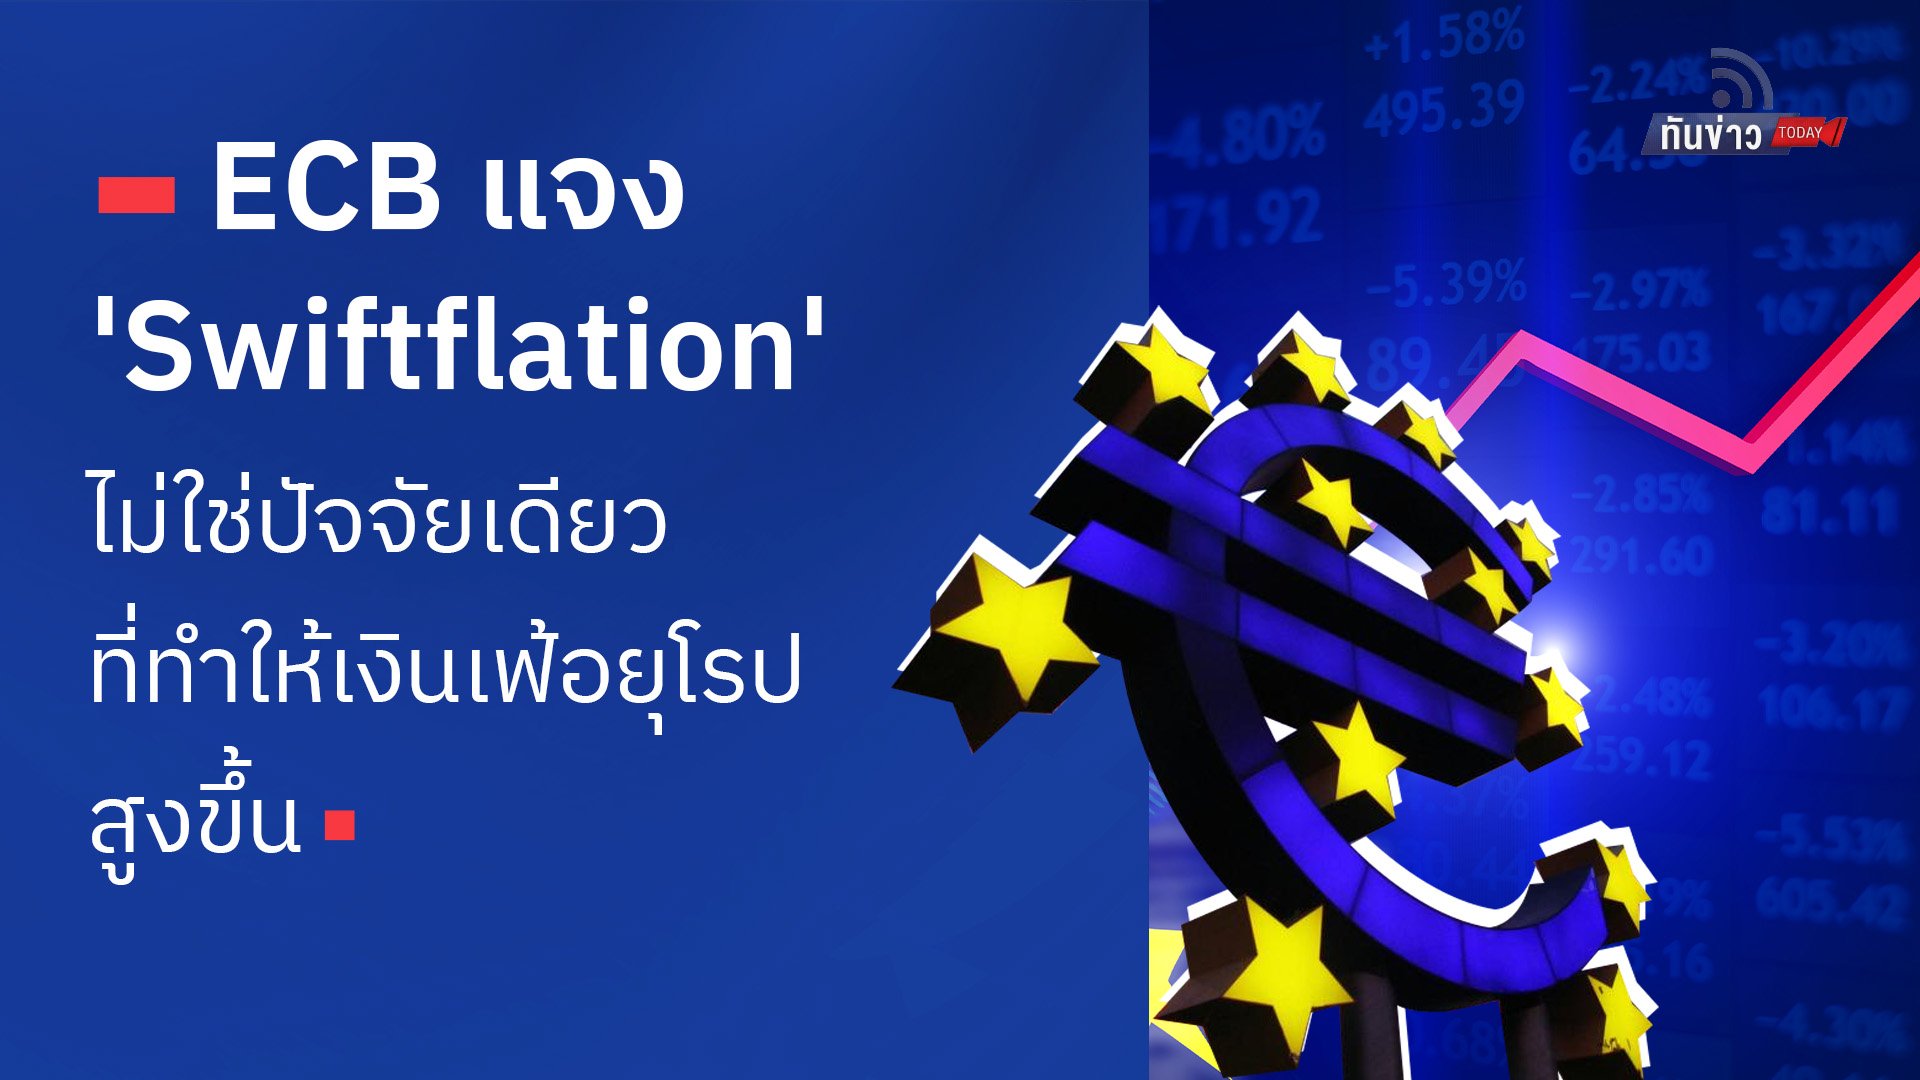 ECB แจง 'Swiftflation' ไม่ใช่ปัจจัยเดียวทำให้เงินเฟ้อยุโรปสูงขึ้น